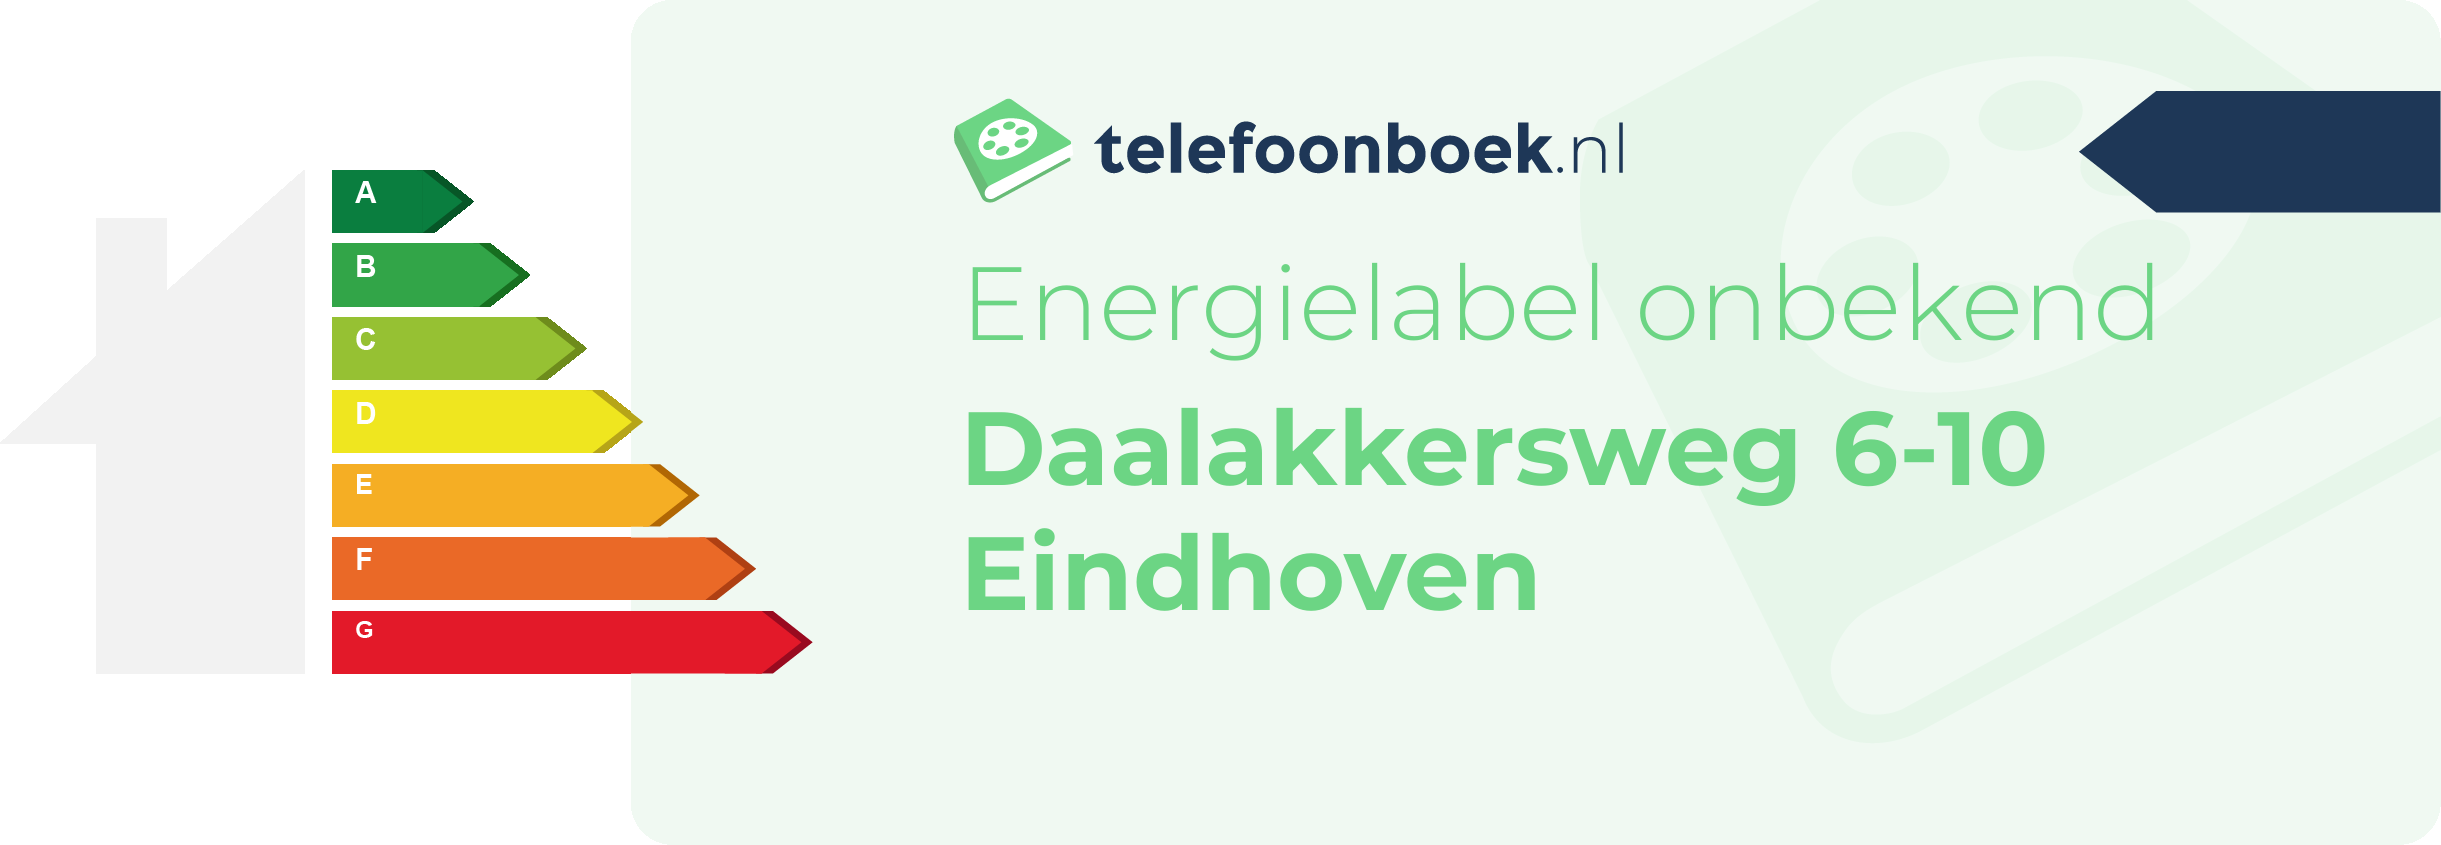 Energielabel Daalakkersweg 6-10 Eindhoven